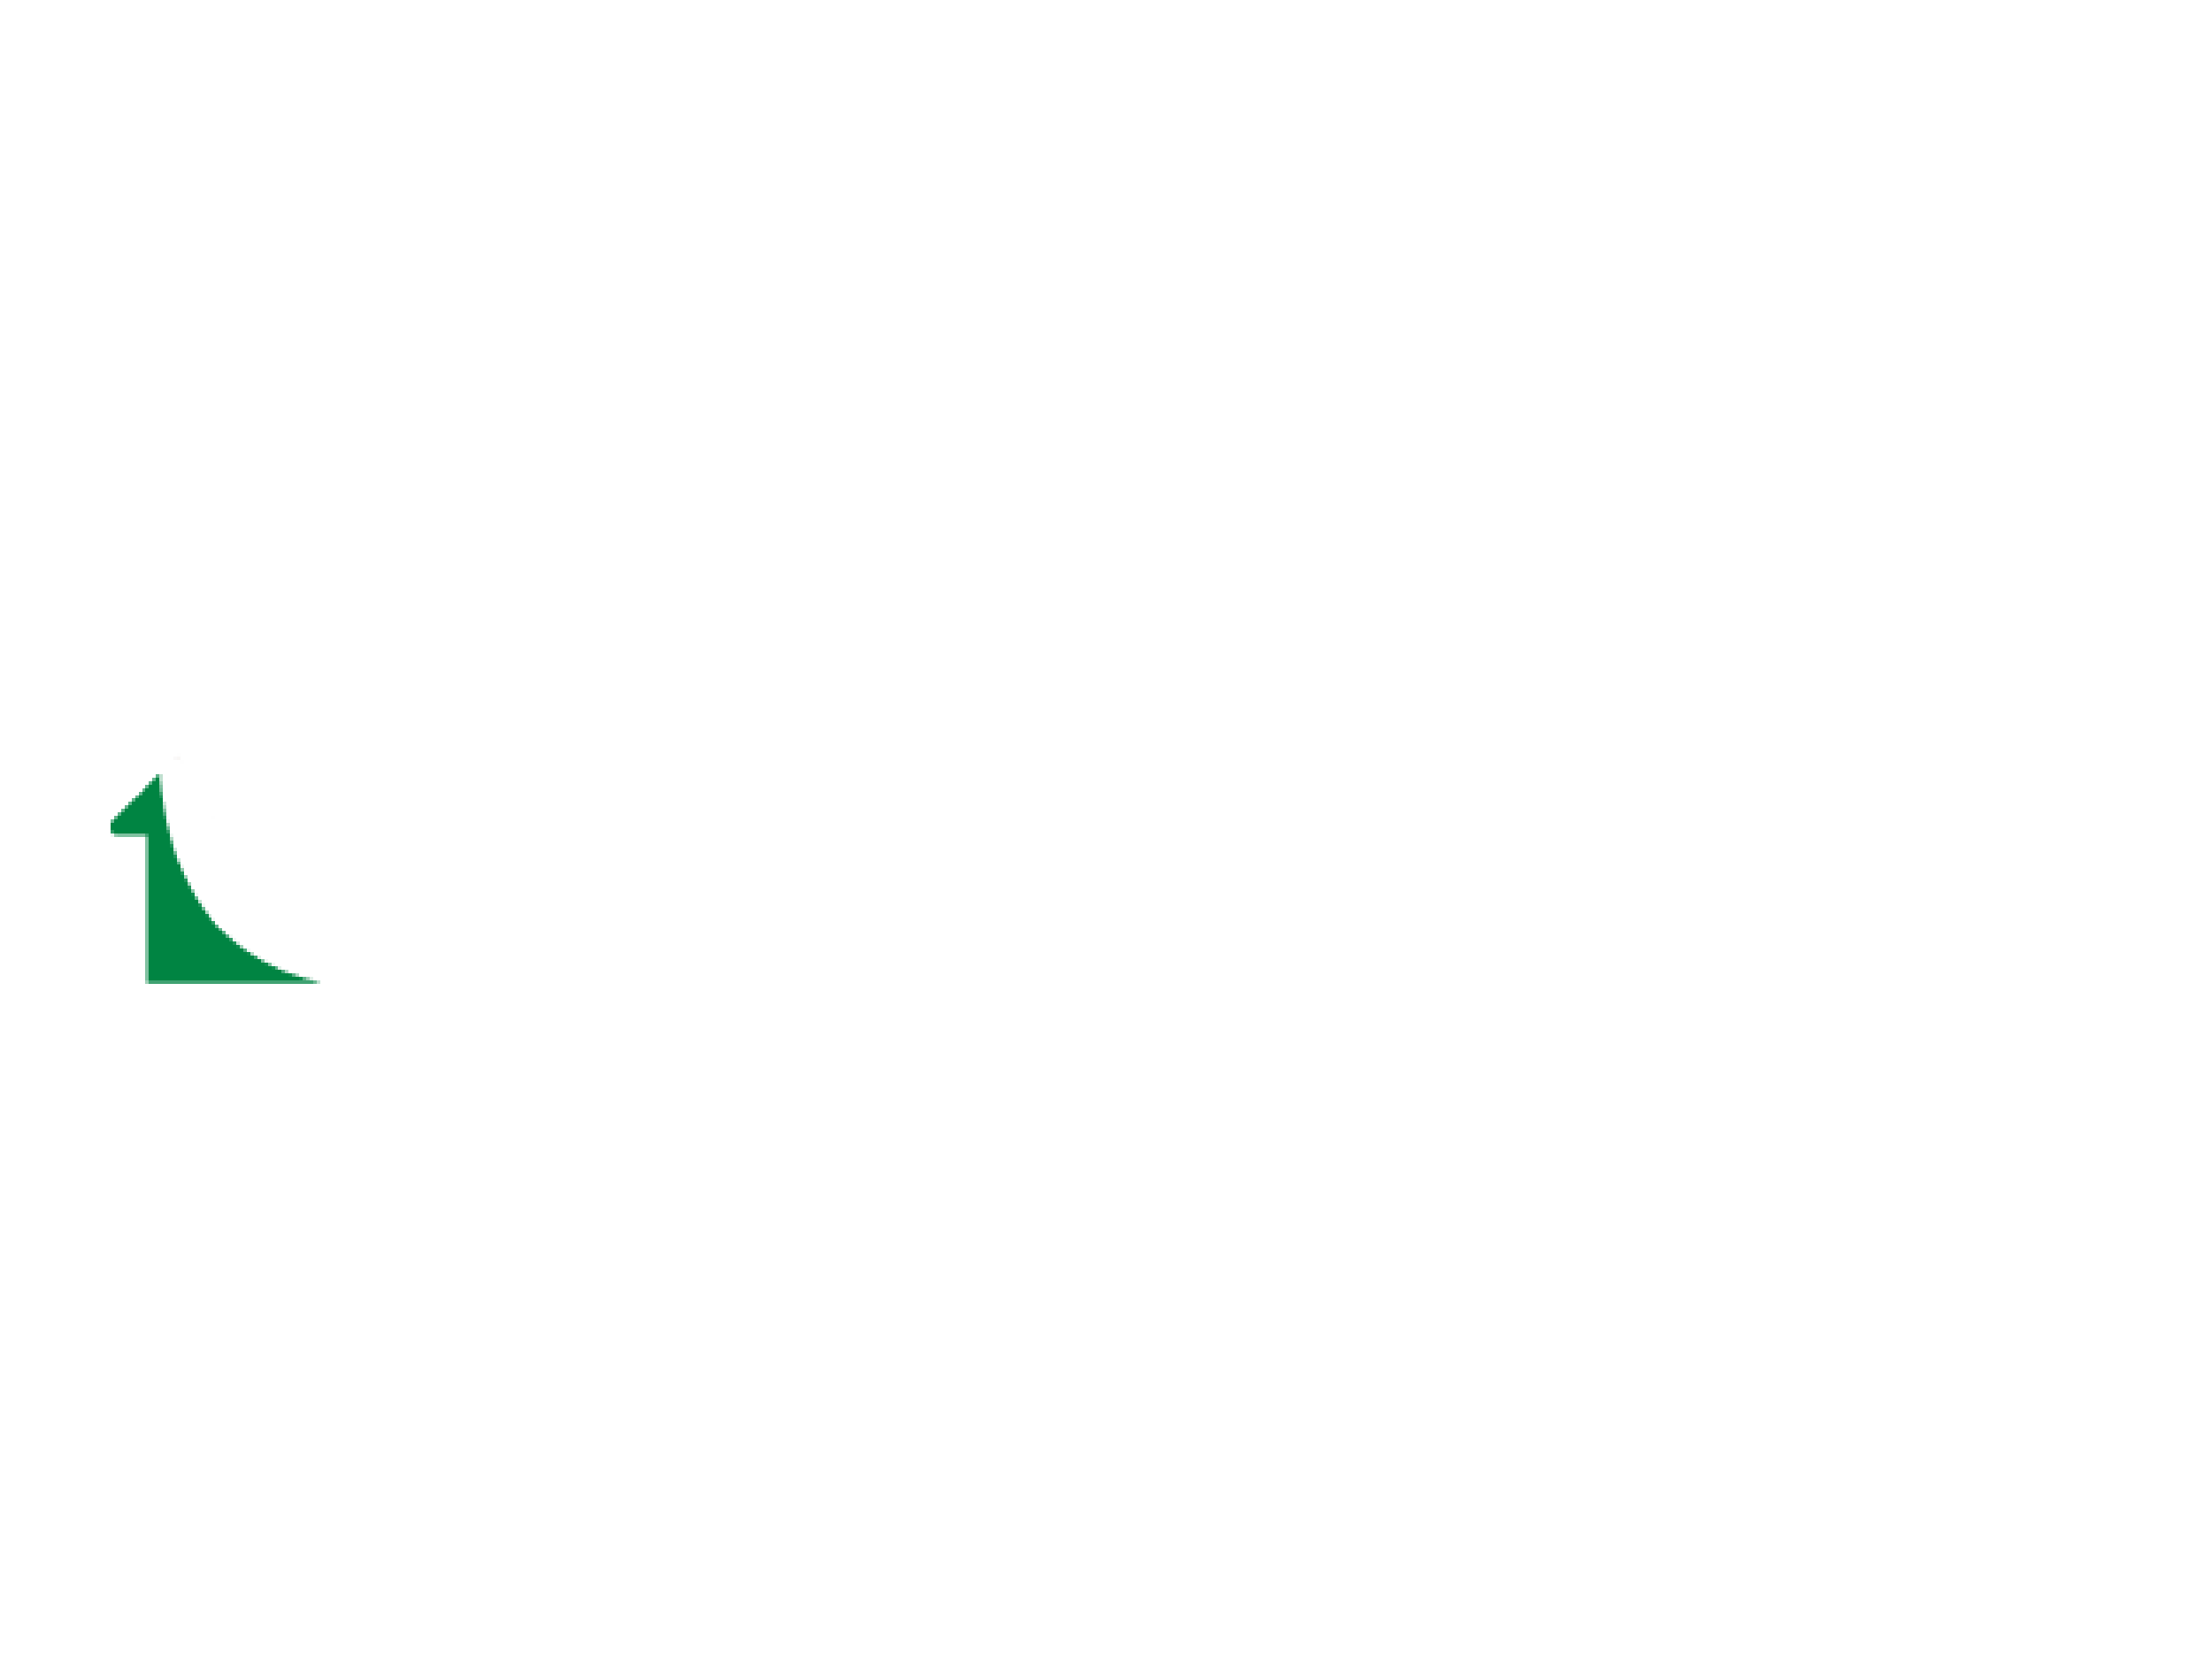 Tuvatextil